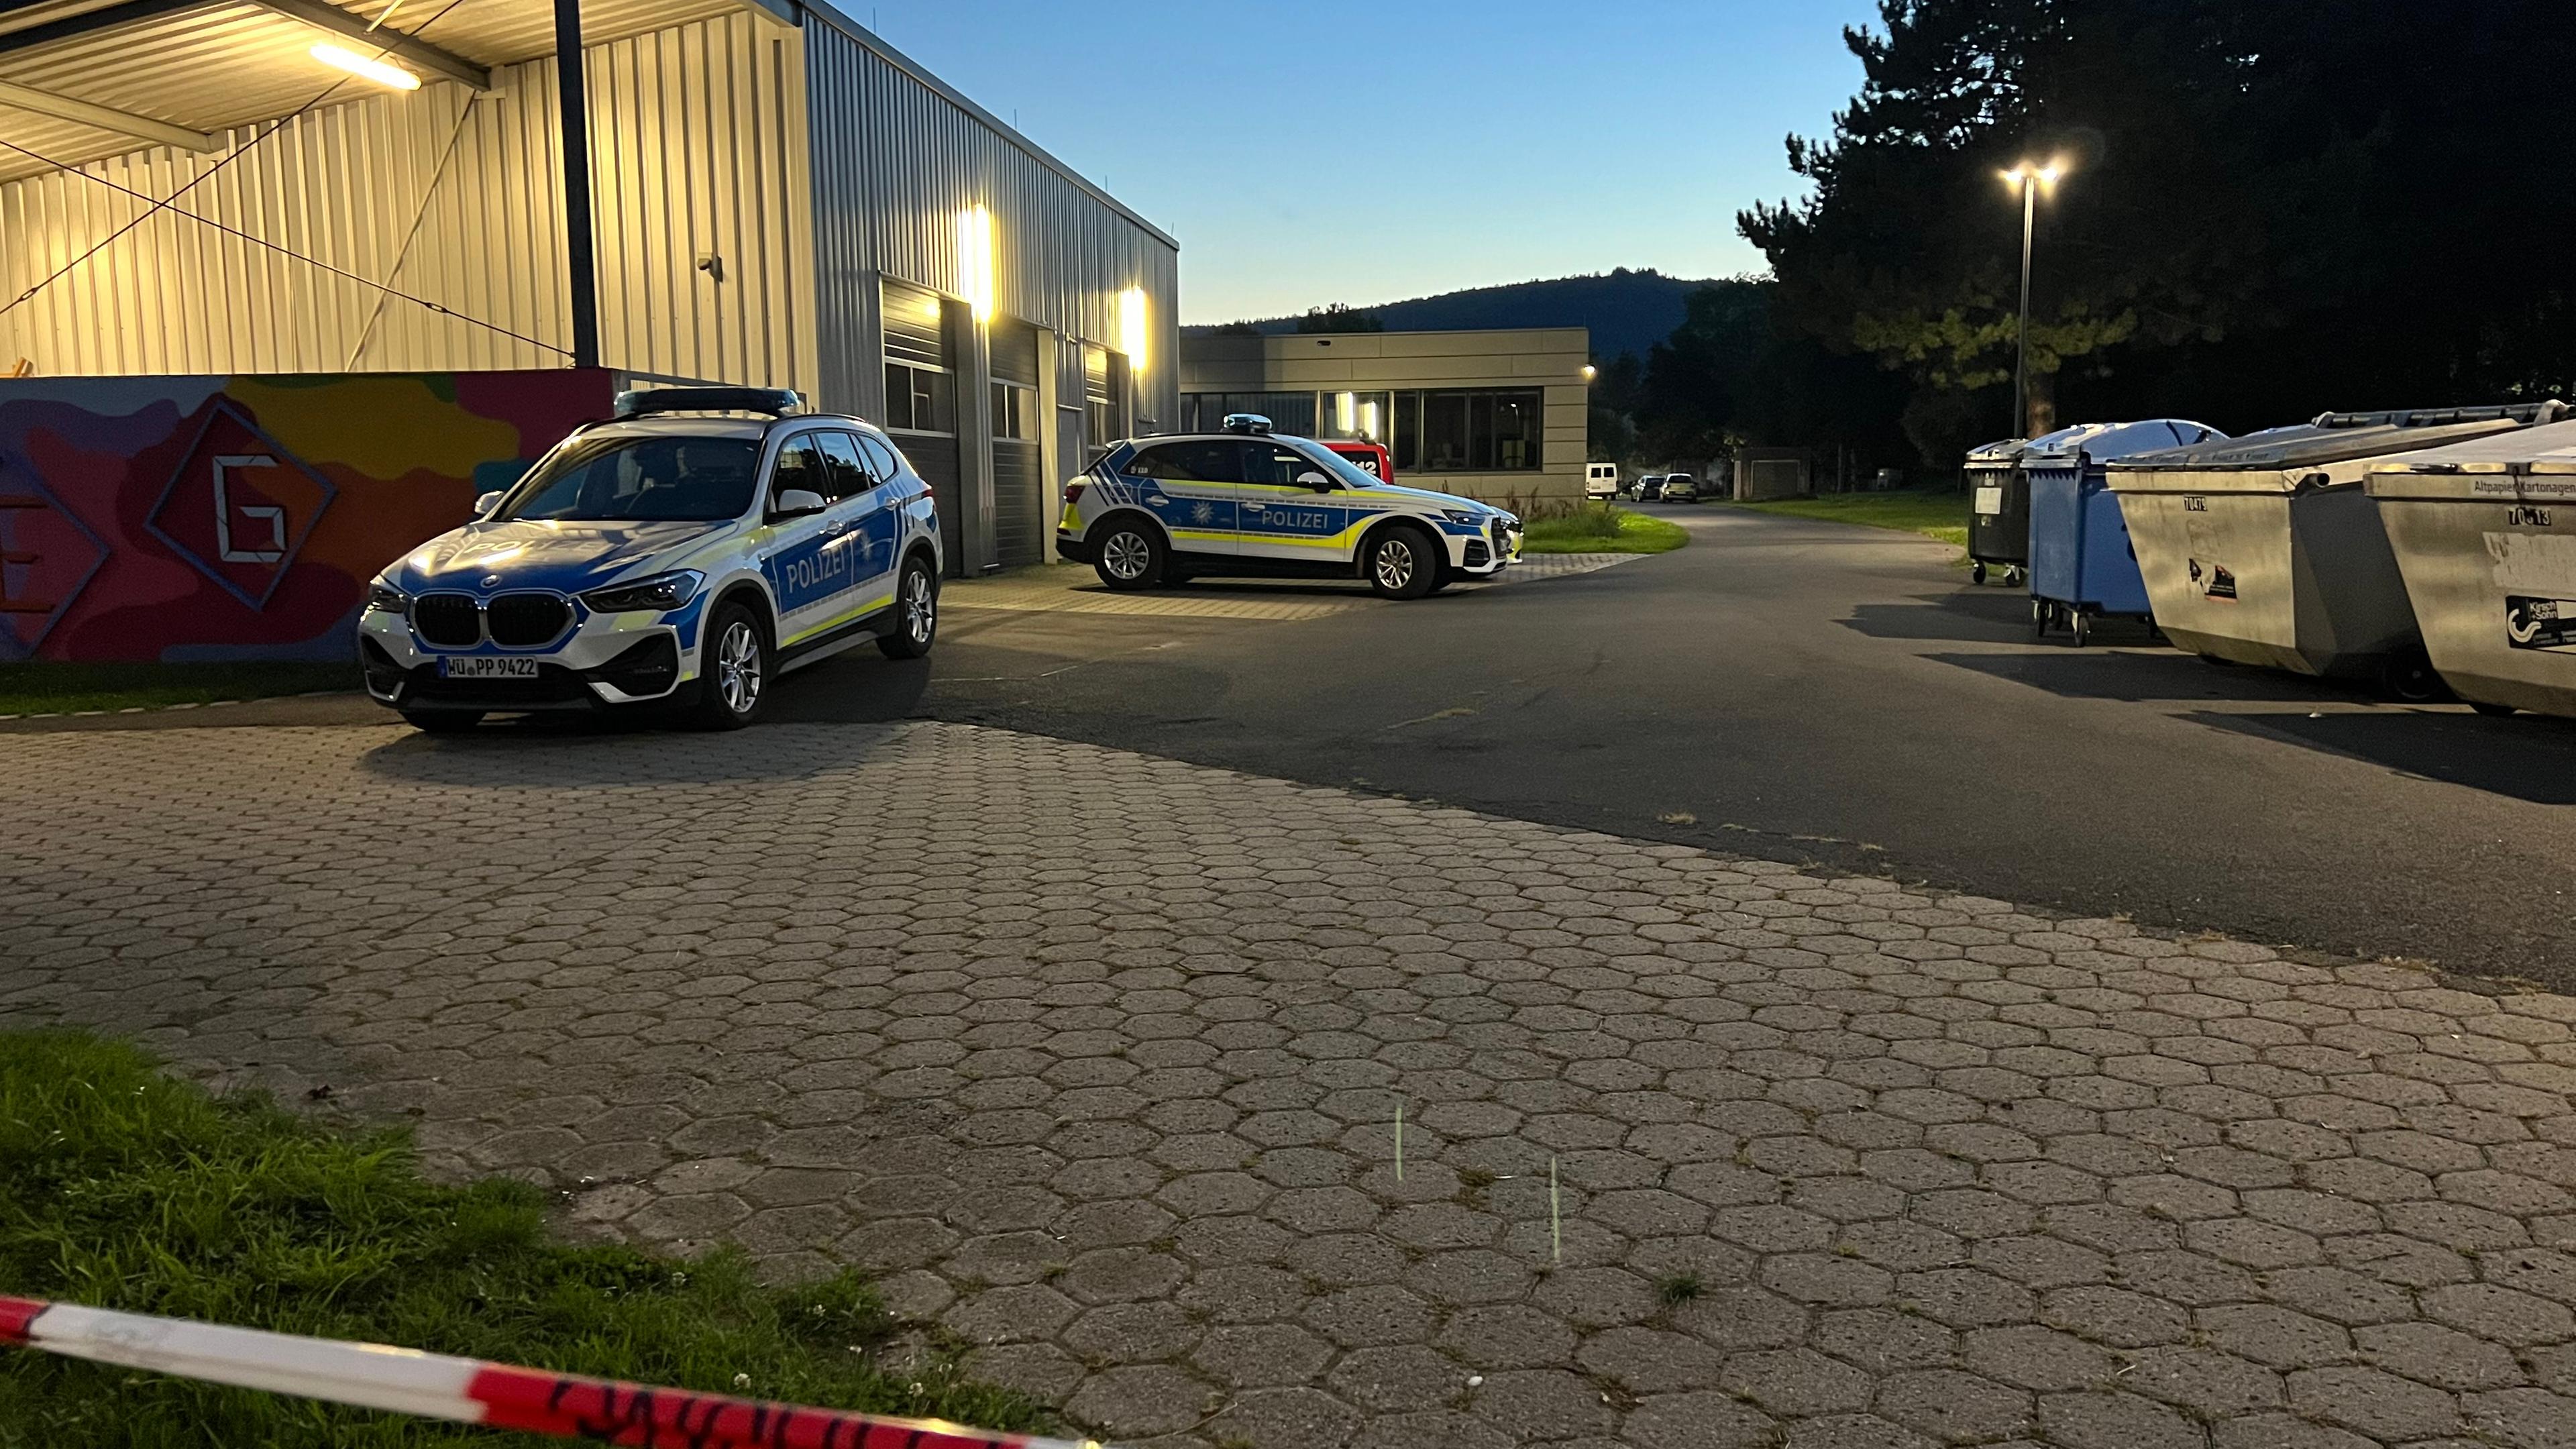 Polizeiwagen auf dem Gelände eines Schulzentrums in Lohr am Main, Bayern